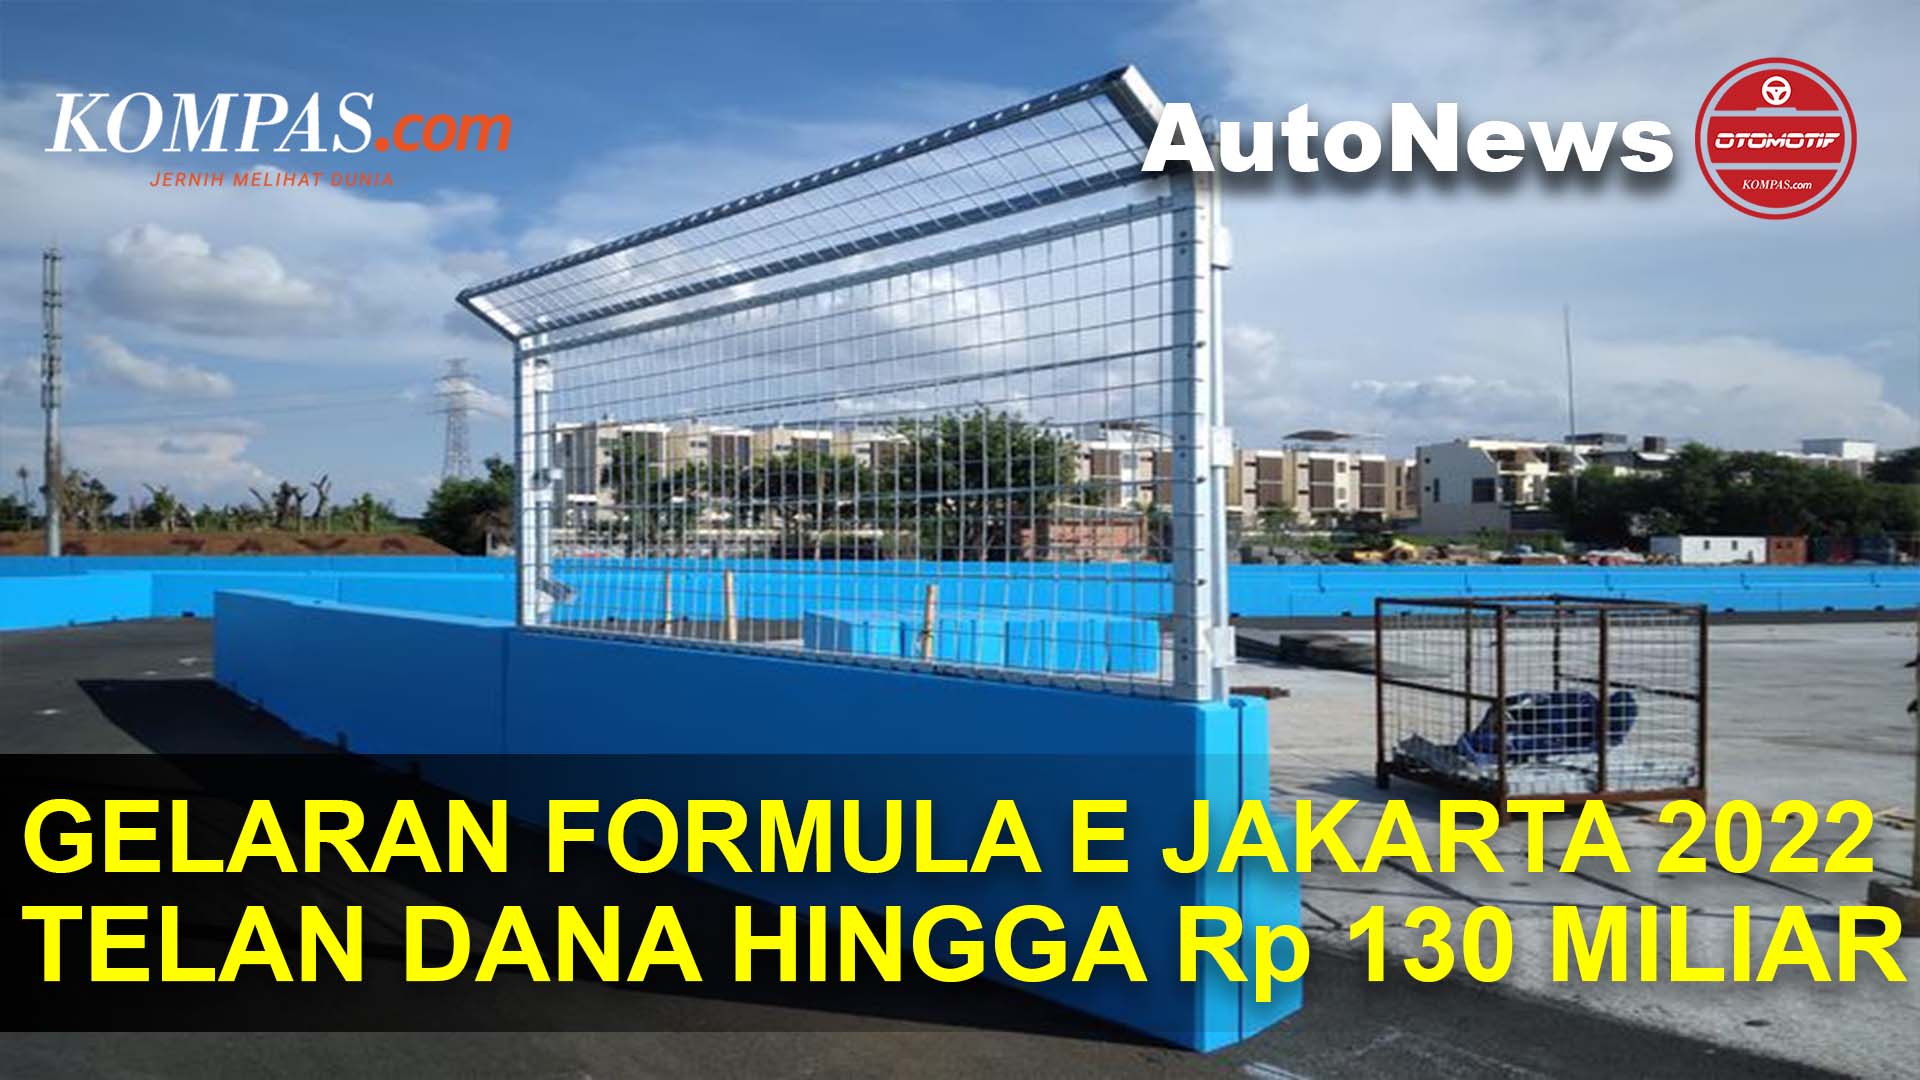 Panitia Sebut Gelaran Formula E Jakarta Jakarta Telan Dana Hingga Rp 130 Miliar